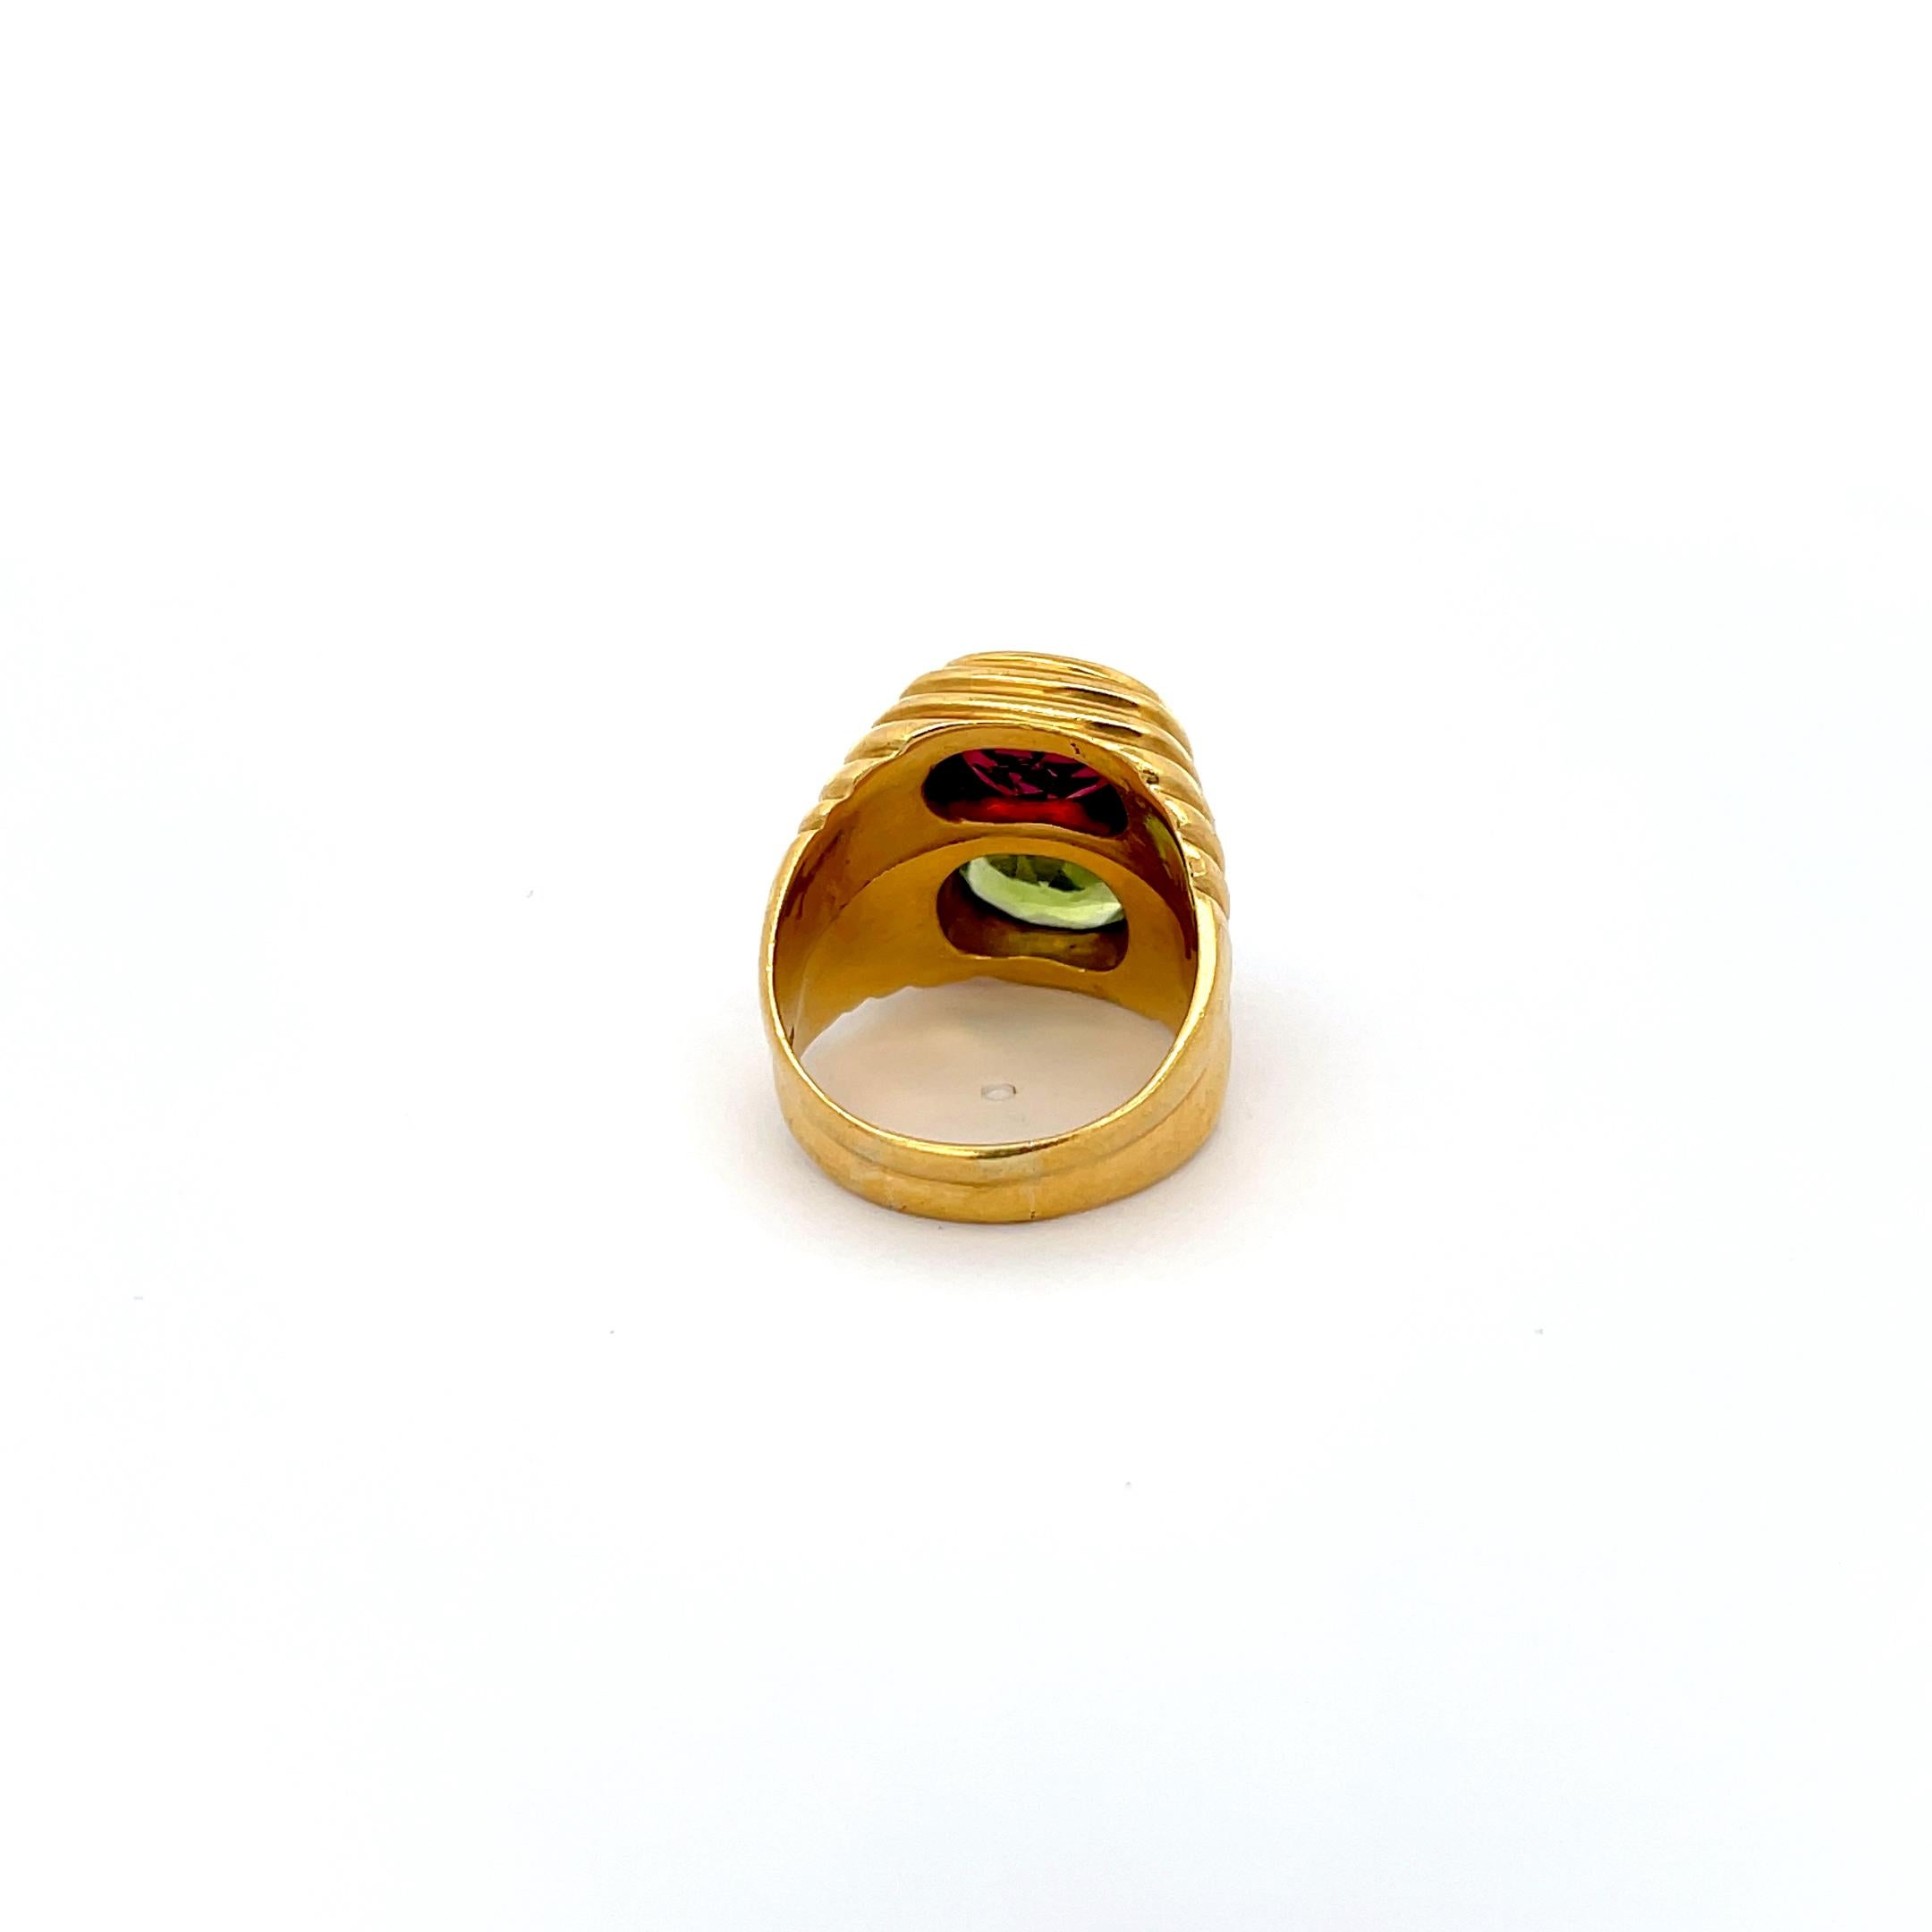 Peridot & Tourmaline Ring 18K Yellow Gold. Size 7.75
19.38 Grams